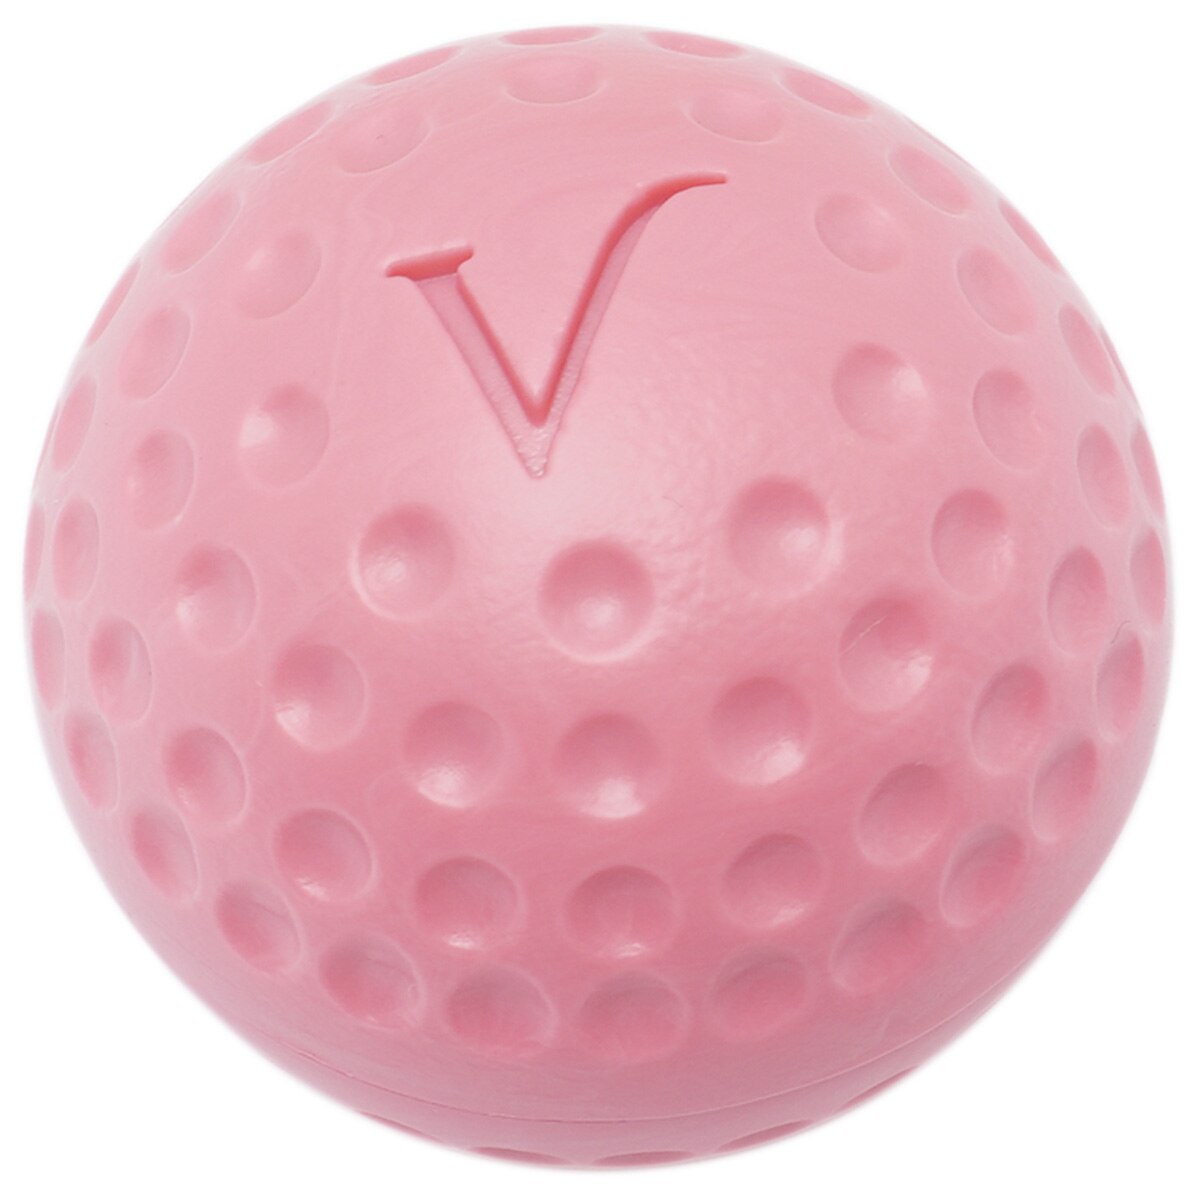 ゴルフボールボールリップバーム ギフトセット(コンペギフト)|Vivus